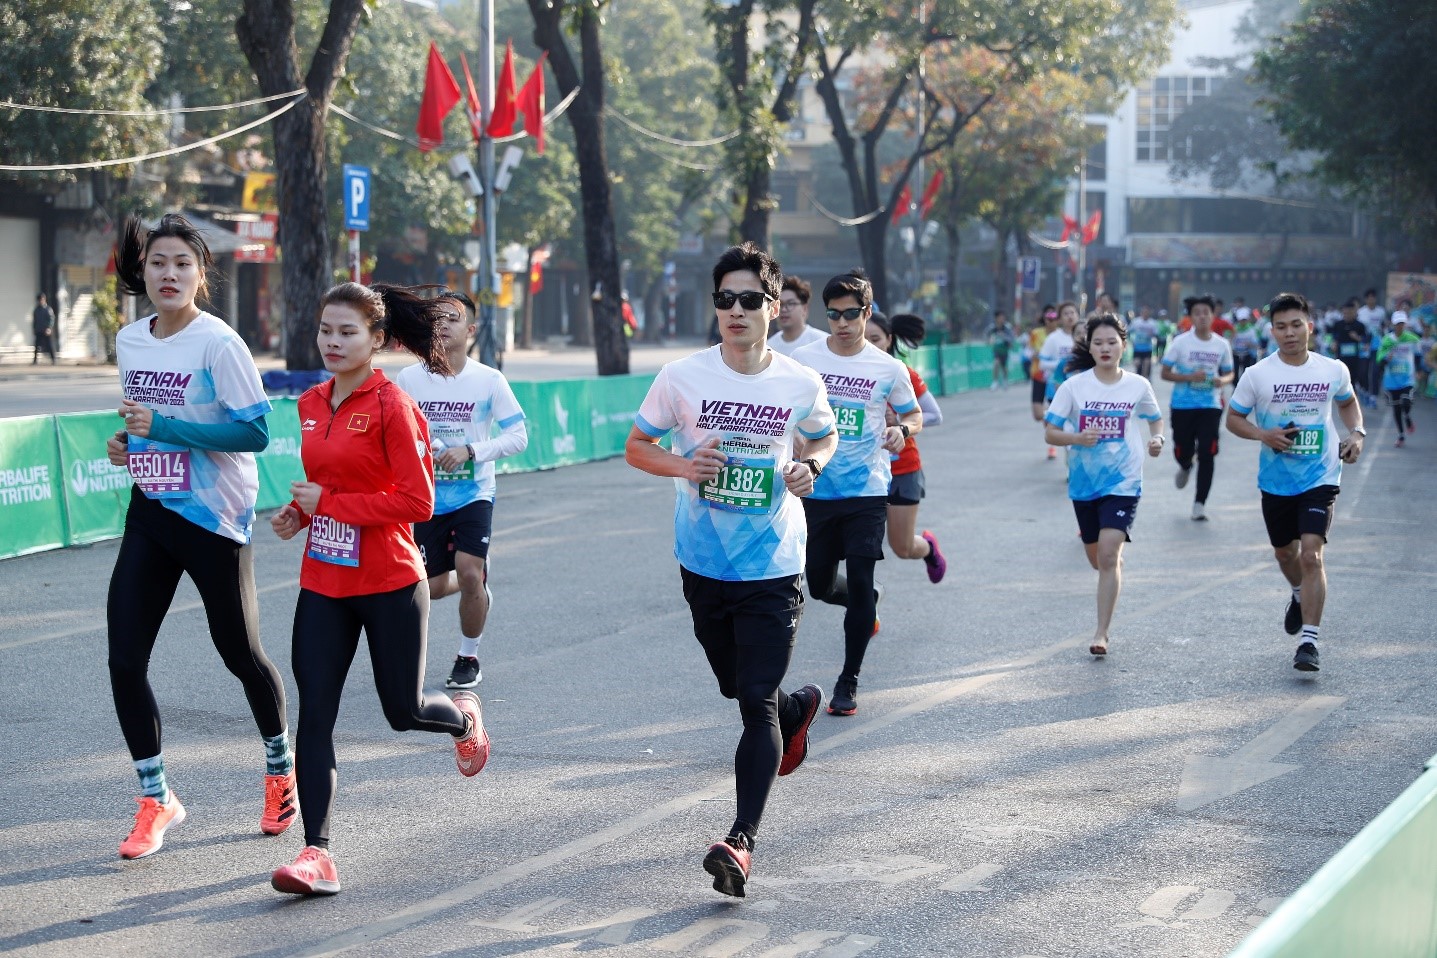 Lan tỏa lối sống tích cực cùng đường chạy bán marathon do Herbalife Việt Nam đồng hành